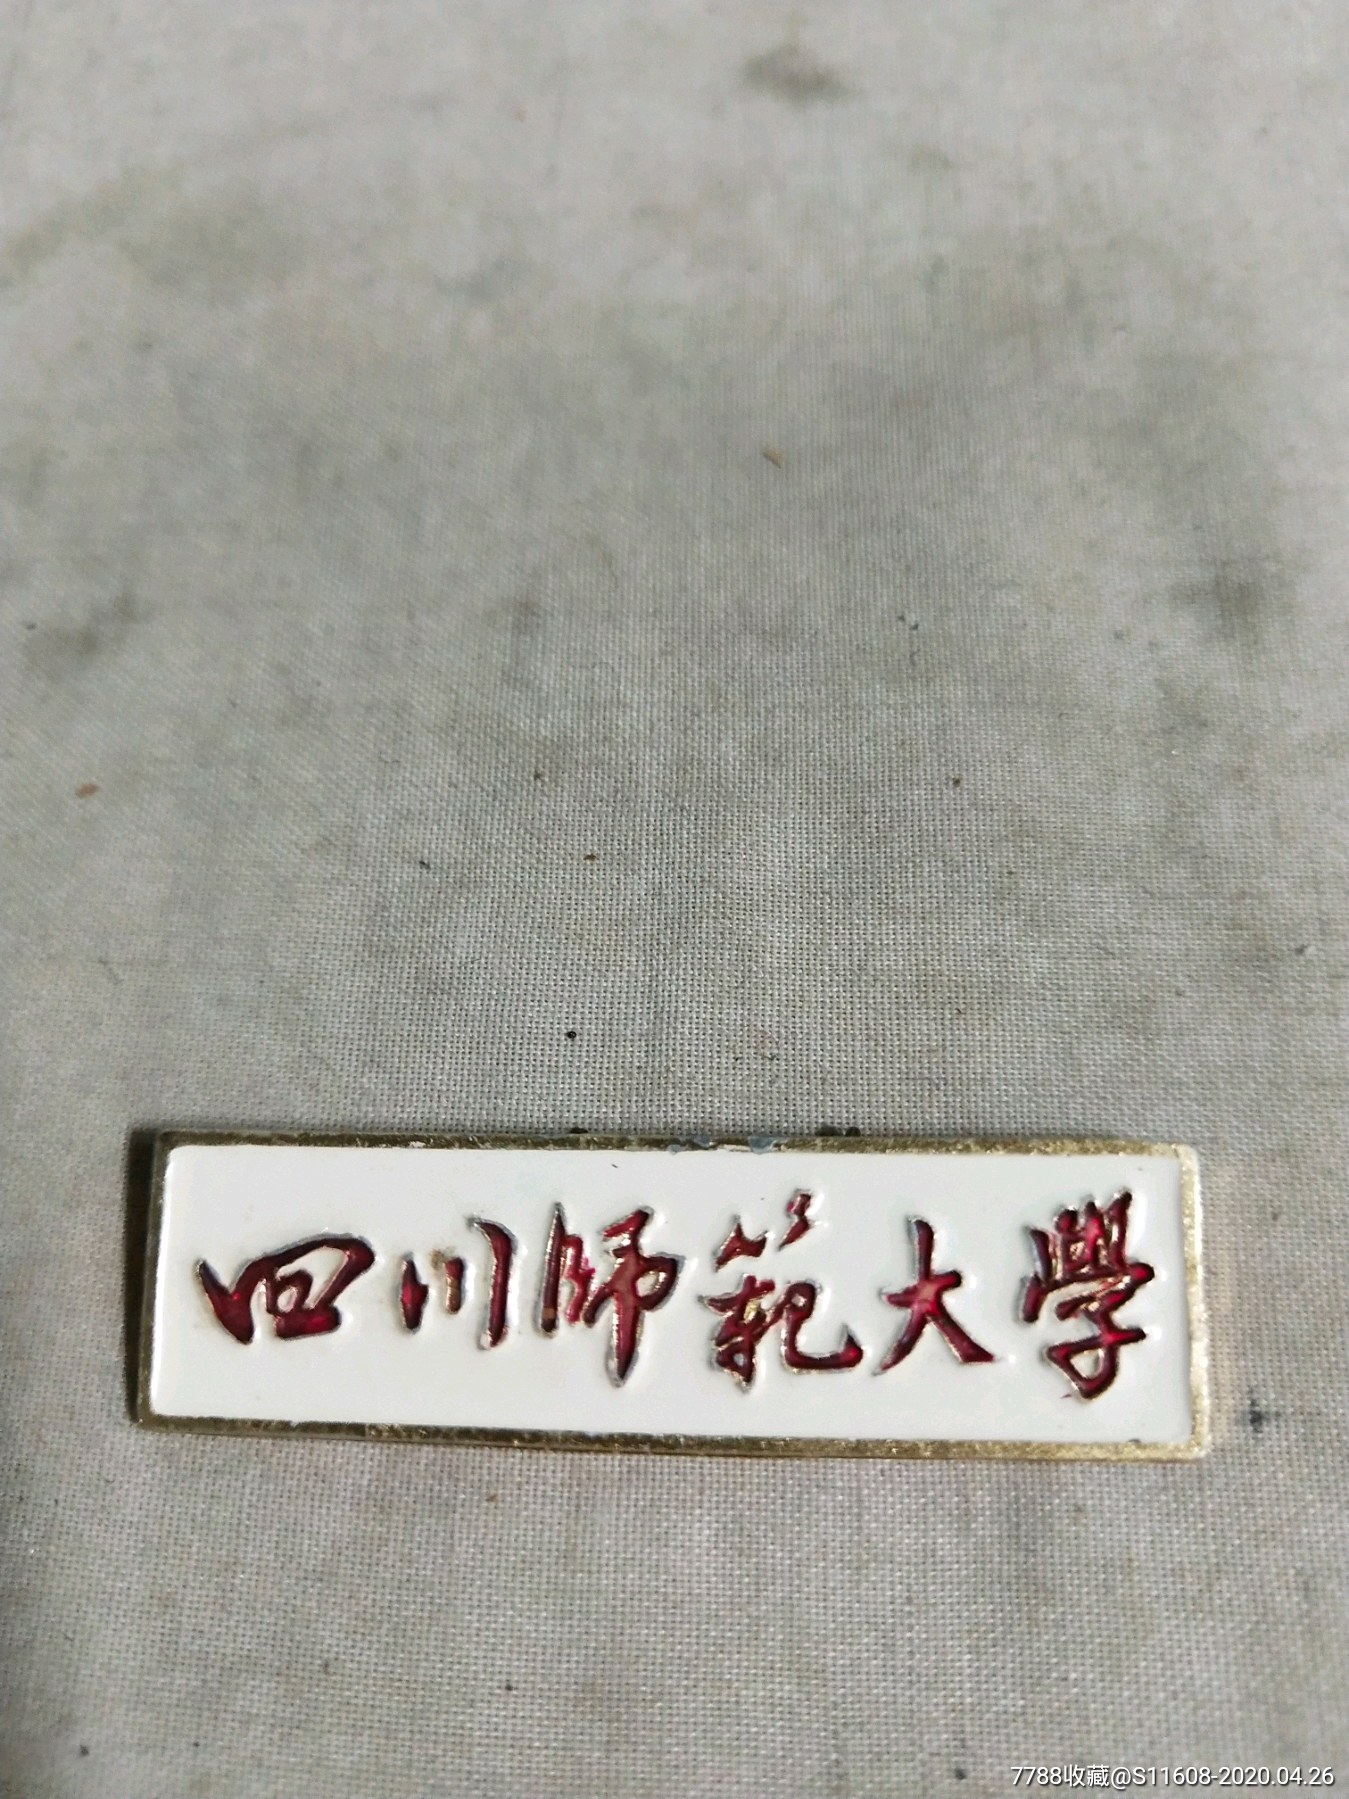 四川师范大学(文革时期校牌)